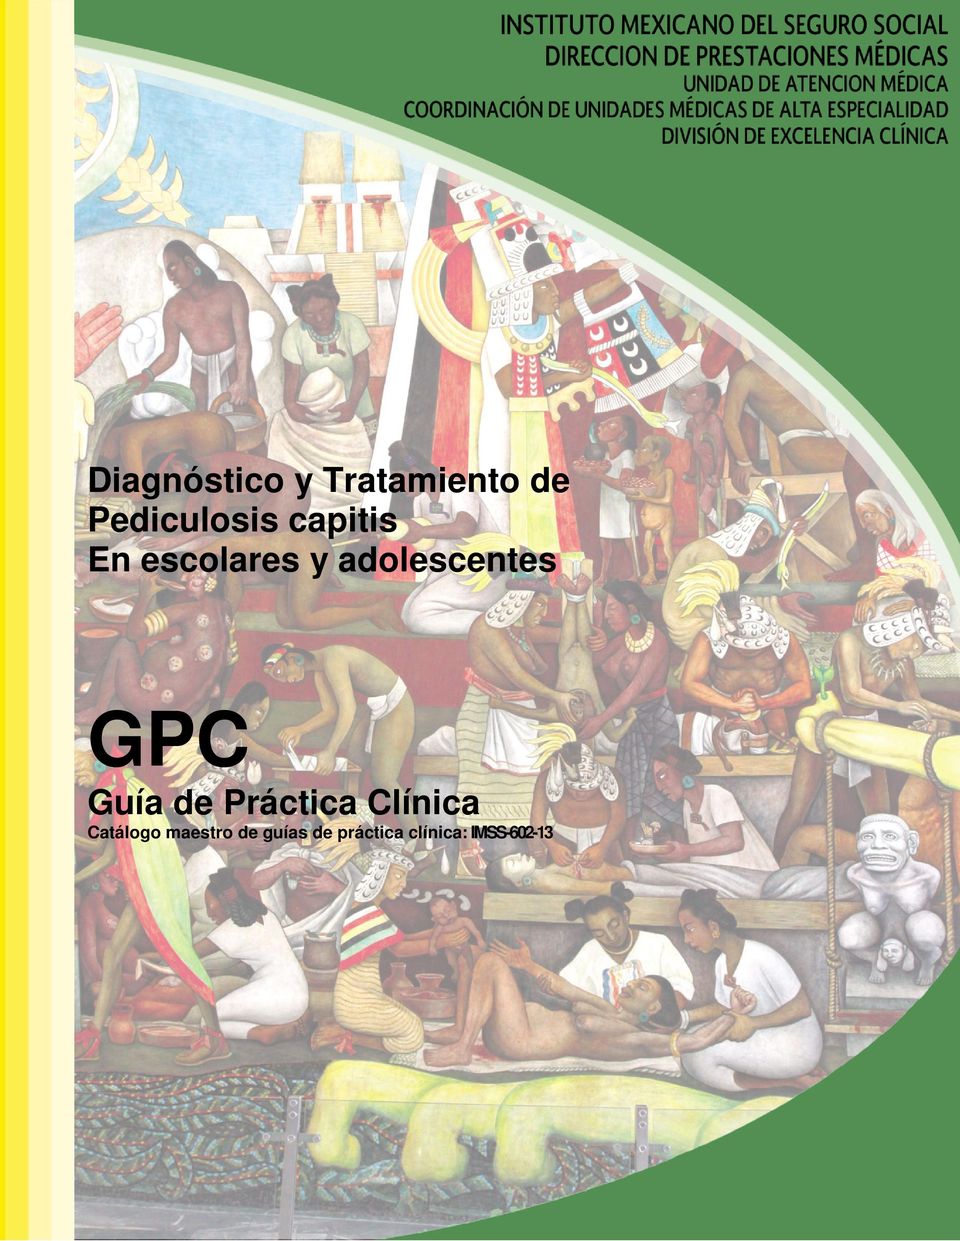 Guía de Práctica Clínica Catálogo maestro